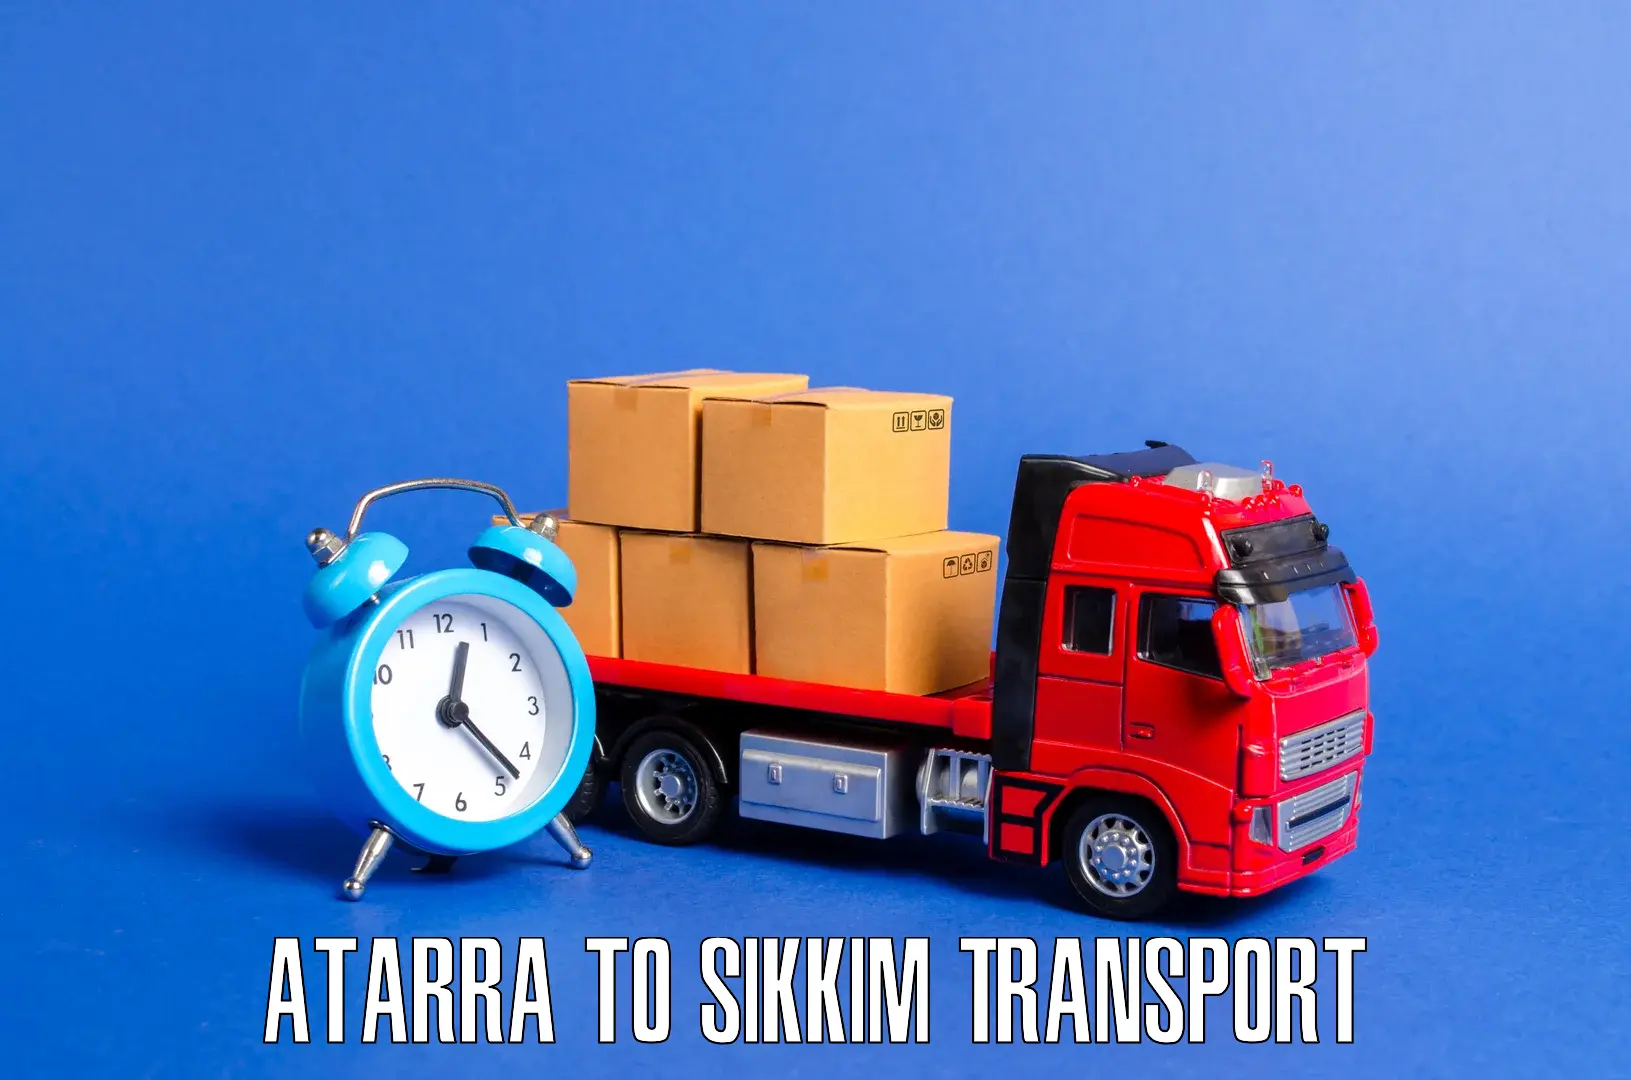 Express transport services Atarra to Mangan